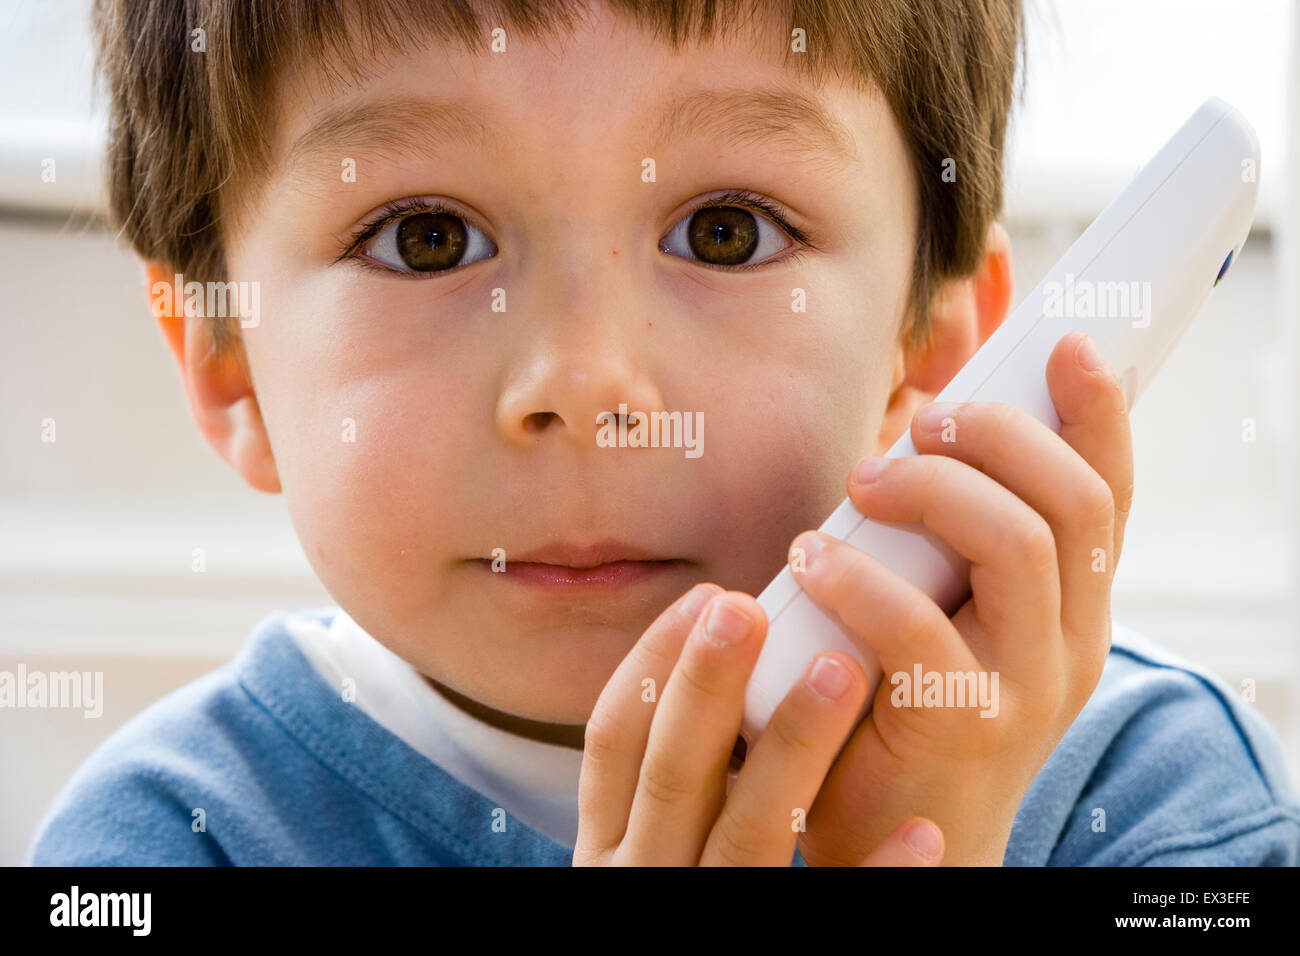 Nahaufnahme von einem kaukasischen Kind, Junge, 5-6 Jahre alt, Verlegung im Innenbereich auf Holzboden holding Telefon an sein Ohr, die versuchen, die Lautsprecher zu hören. Auge - Kontakt. Stockfoto